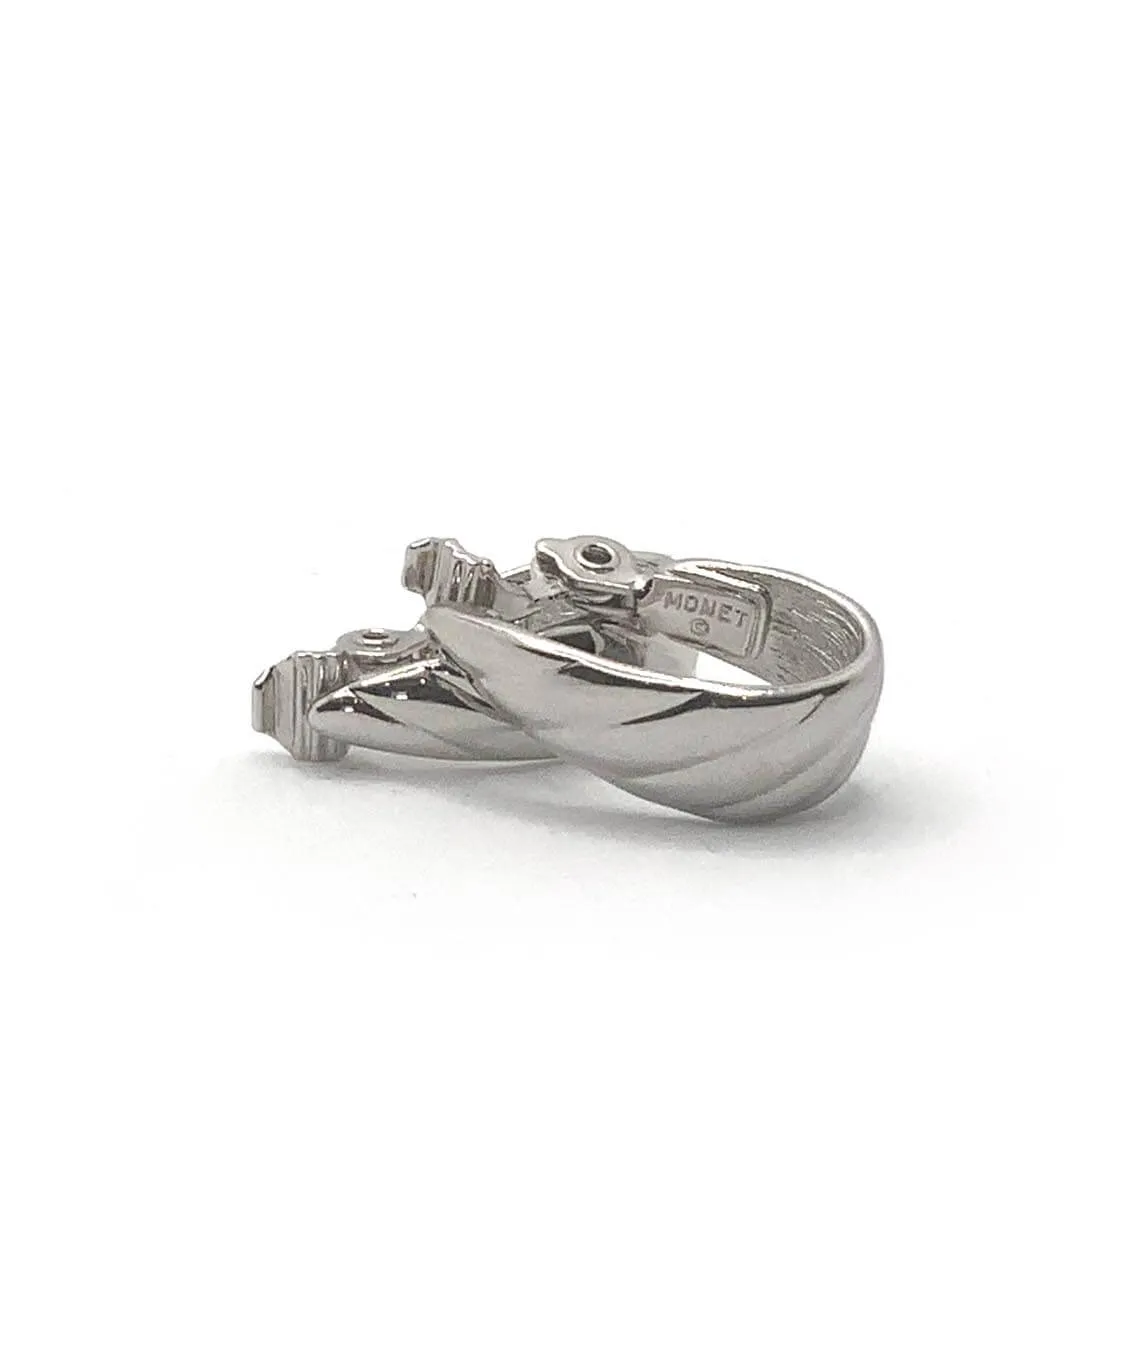 Monet silver tone clip-on half hoop earrings